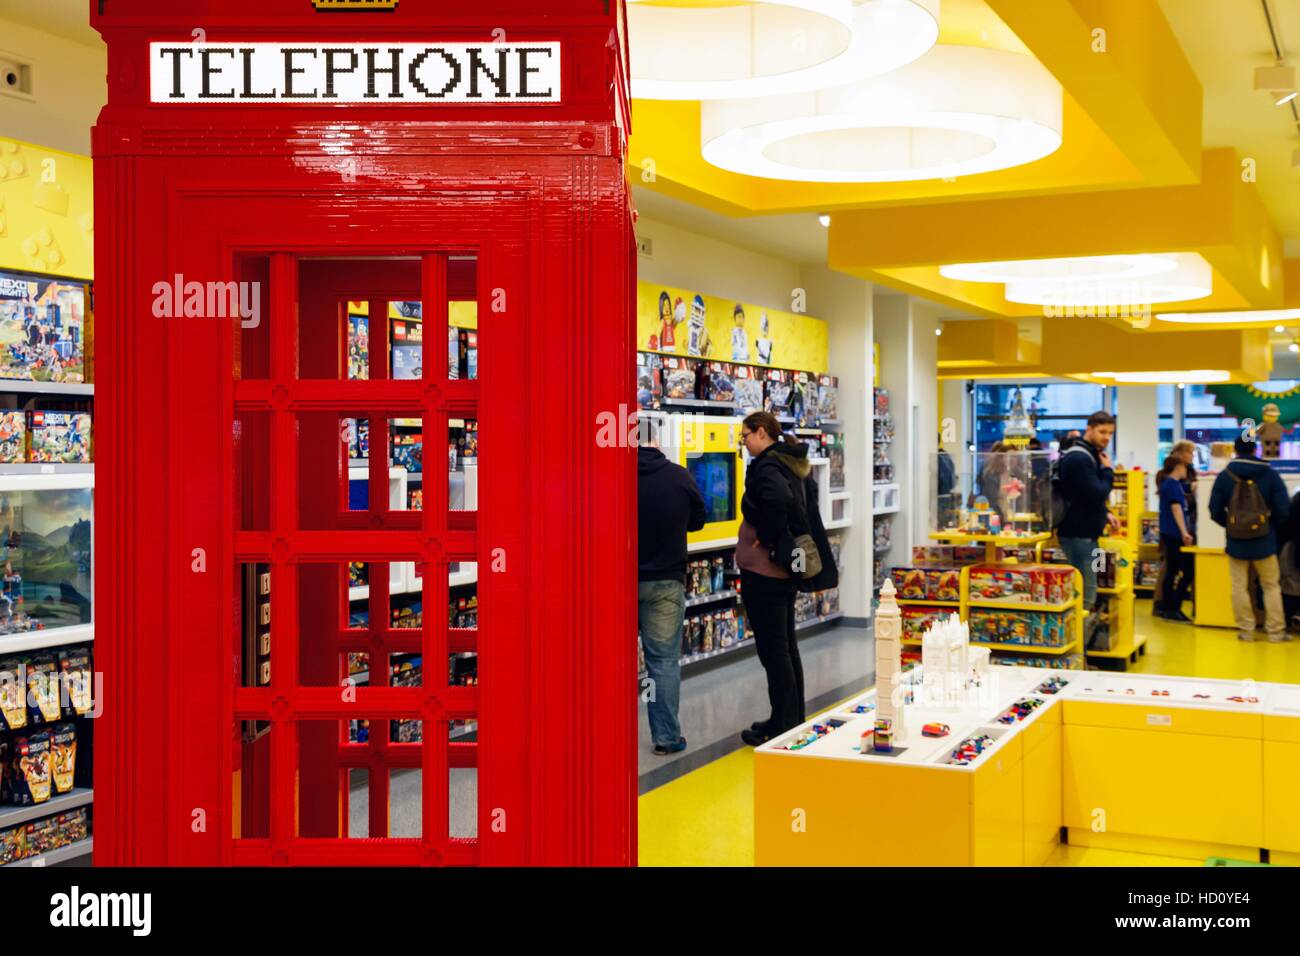 London, UK - 22. November 2016 - rote Telefonzelle, gebaut aus LEGO-Steinen, in die Welten der größte LEGO-Shop, mit Kunden in der Zeitmessung angezeigt Stockfoto